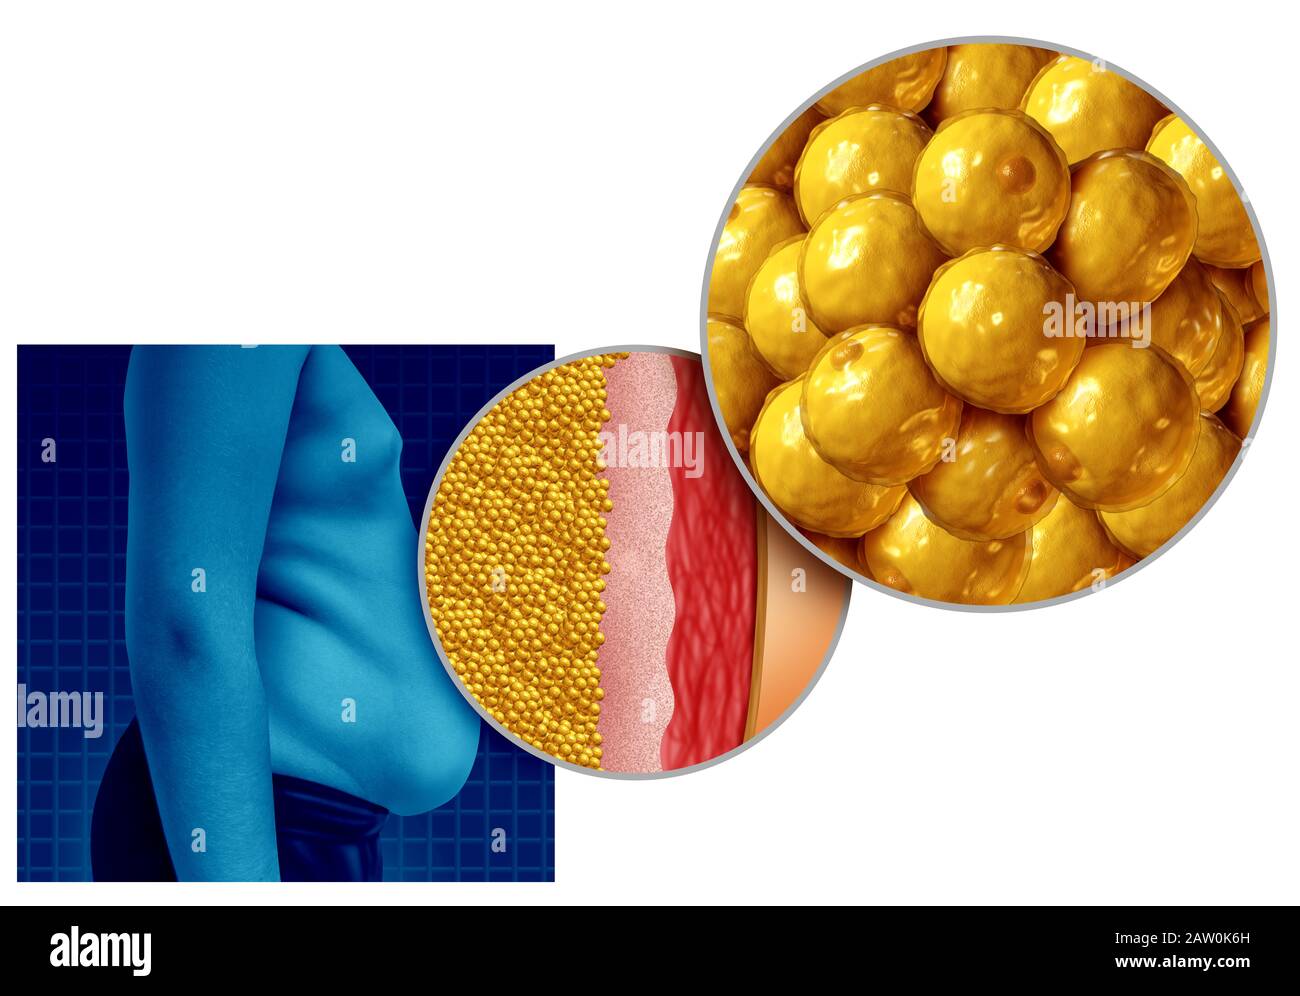 Anatomia del grasso della pancia e guadagnando peso o persone in sovrappeso o obesità come un concetto di salute medica come un aumento nella nutrizione non sana. Foto Stock